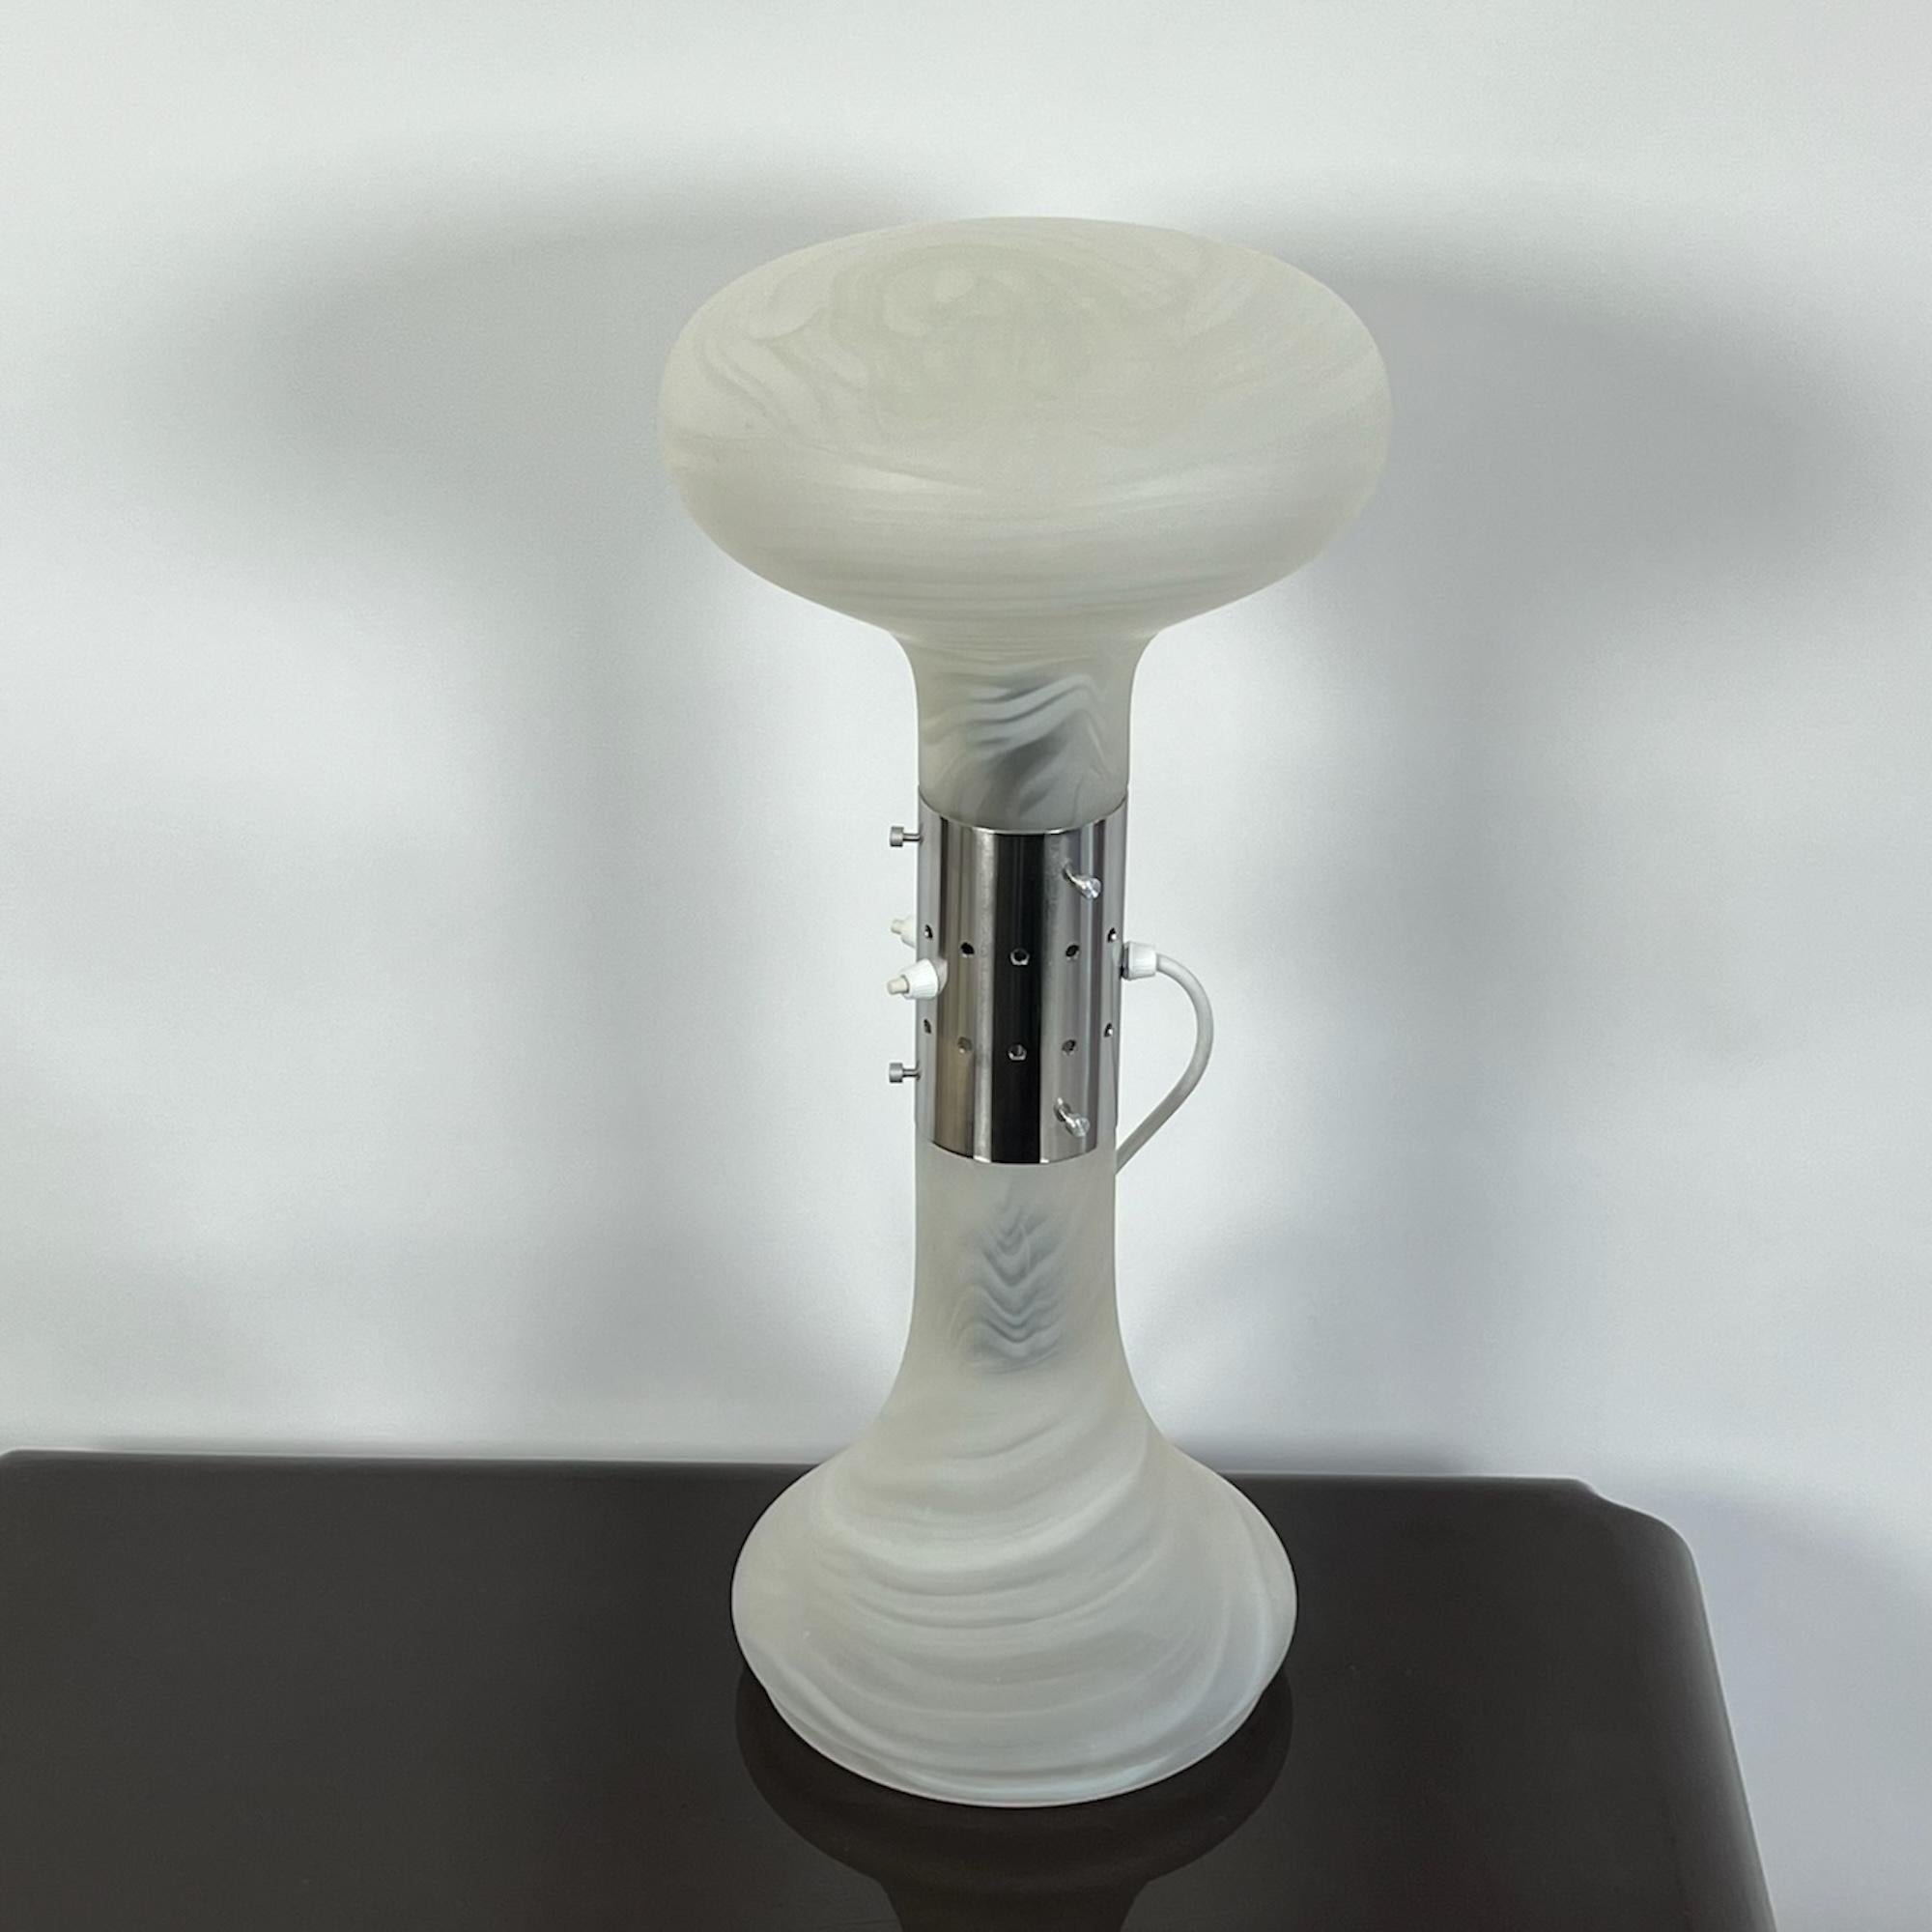 Illuminez votre espace avec l'allure des lampes vintage des années 70, incarnée par cette rare lampe de table 